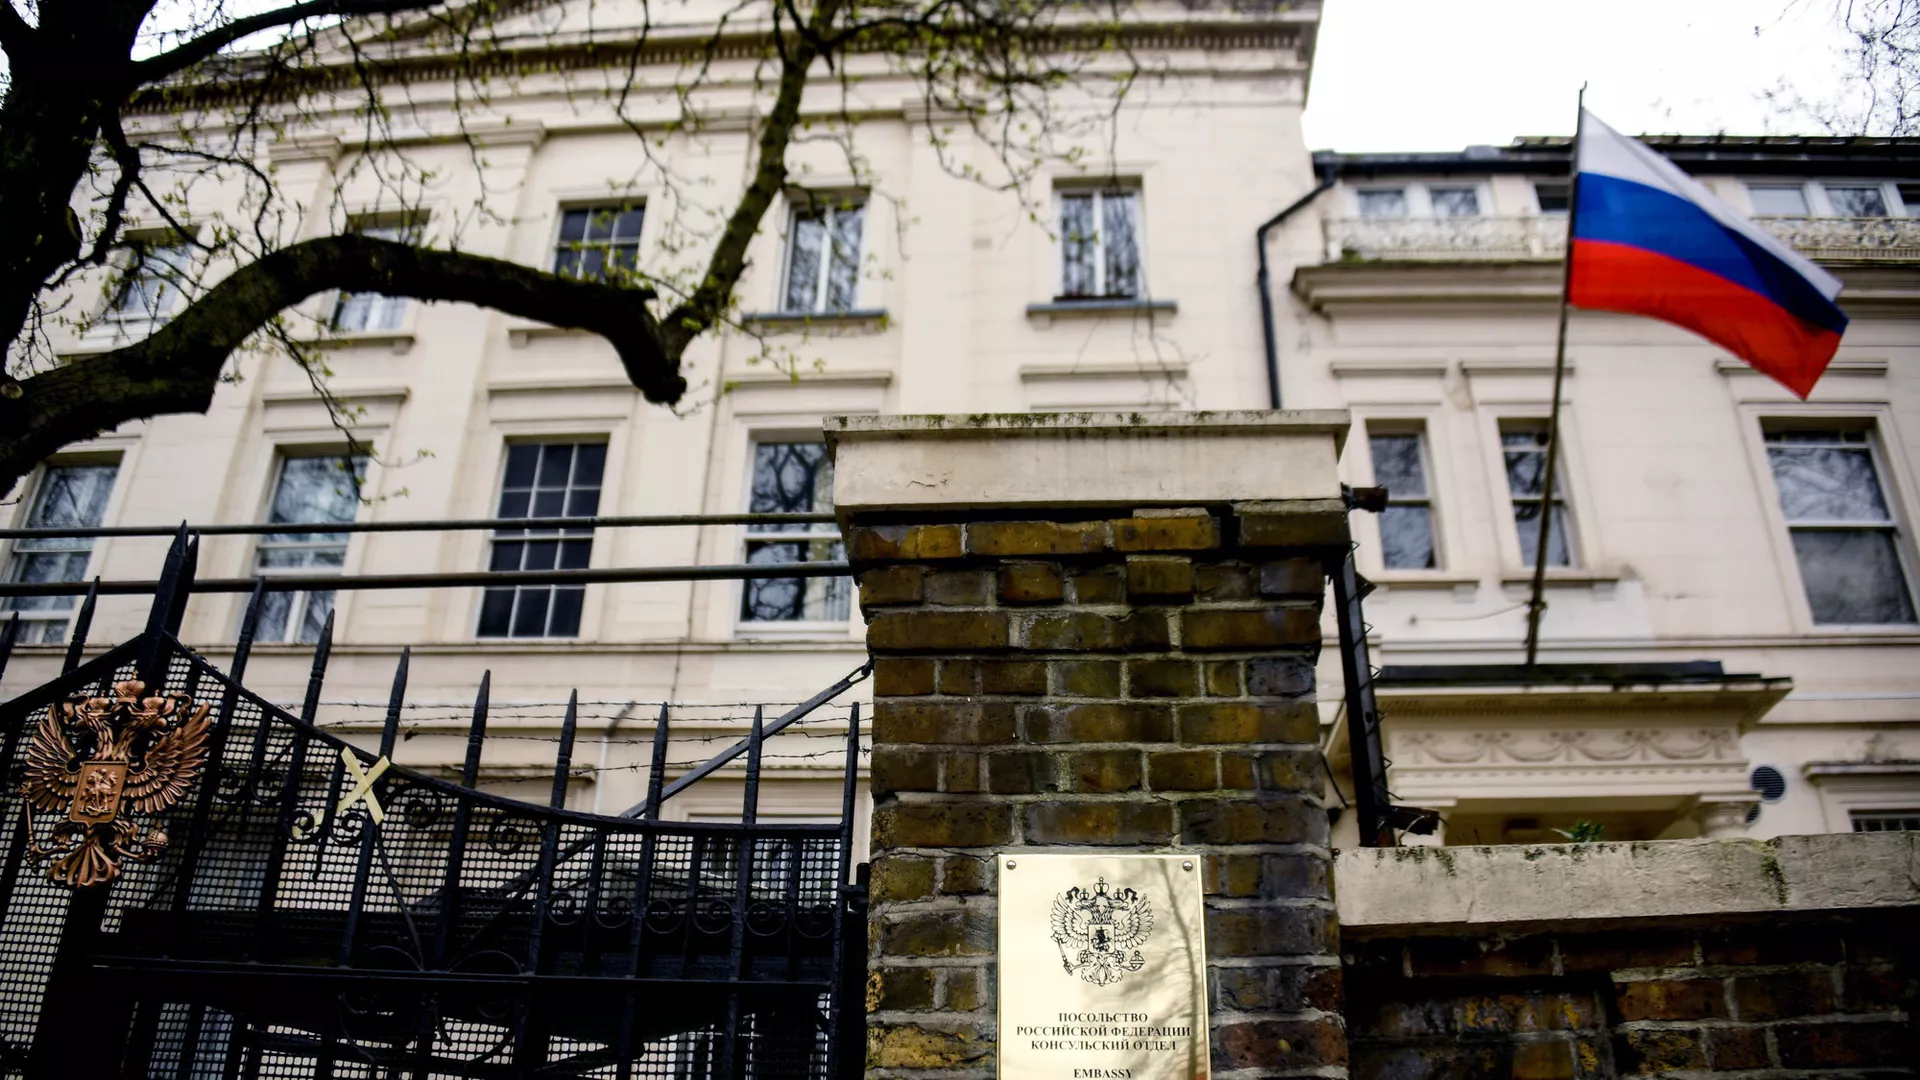 посольство великобритании